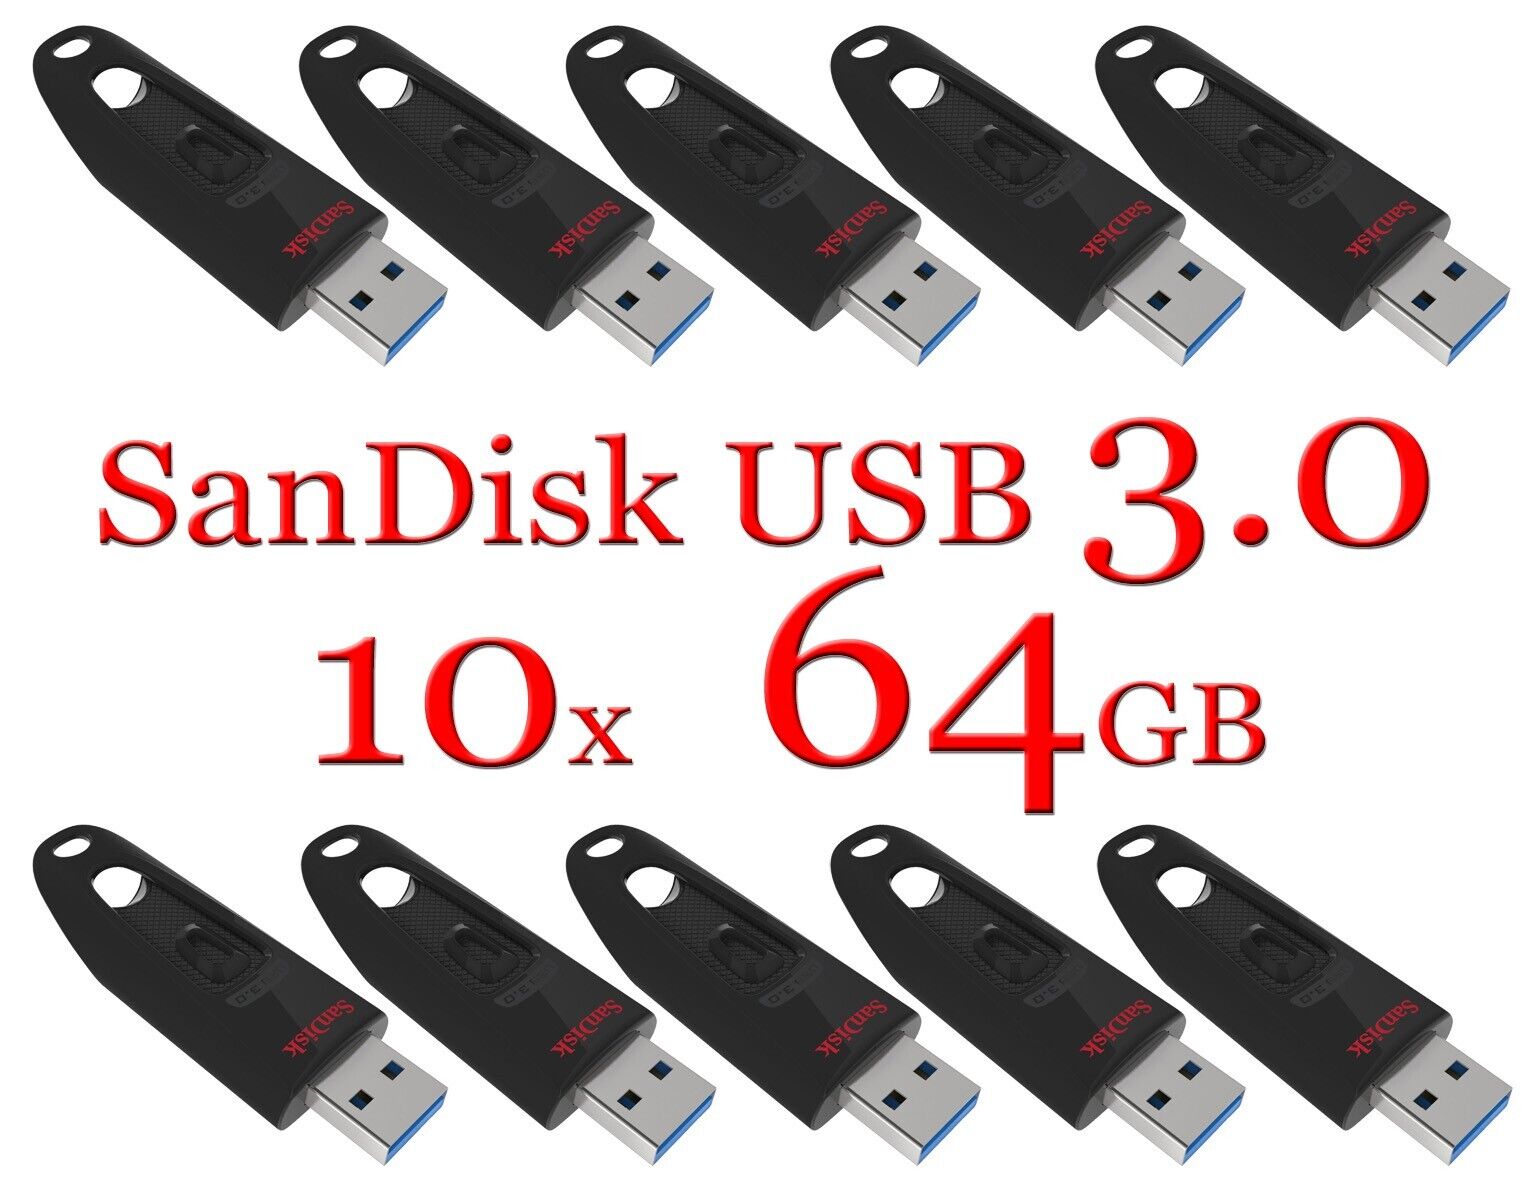 LOT 10x Sandisk Ultra 64GB USB 3.0 Flash Drive 10 x Pack Thumb Drive Pen Drive